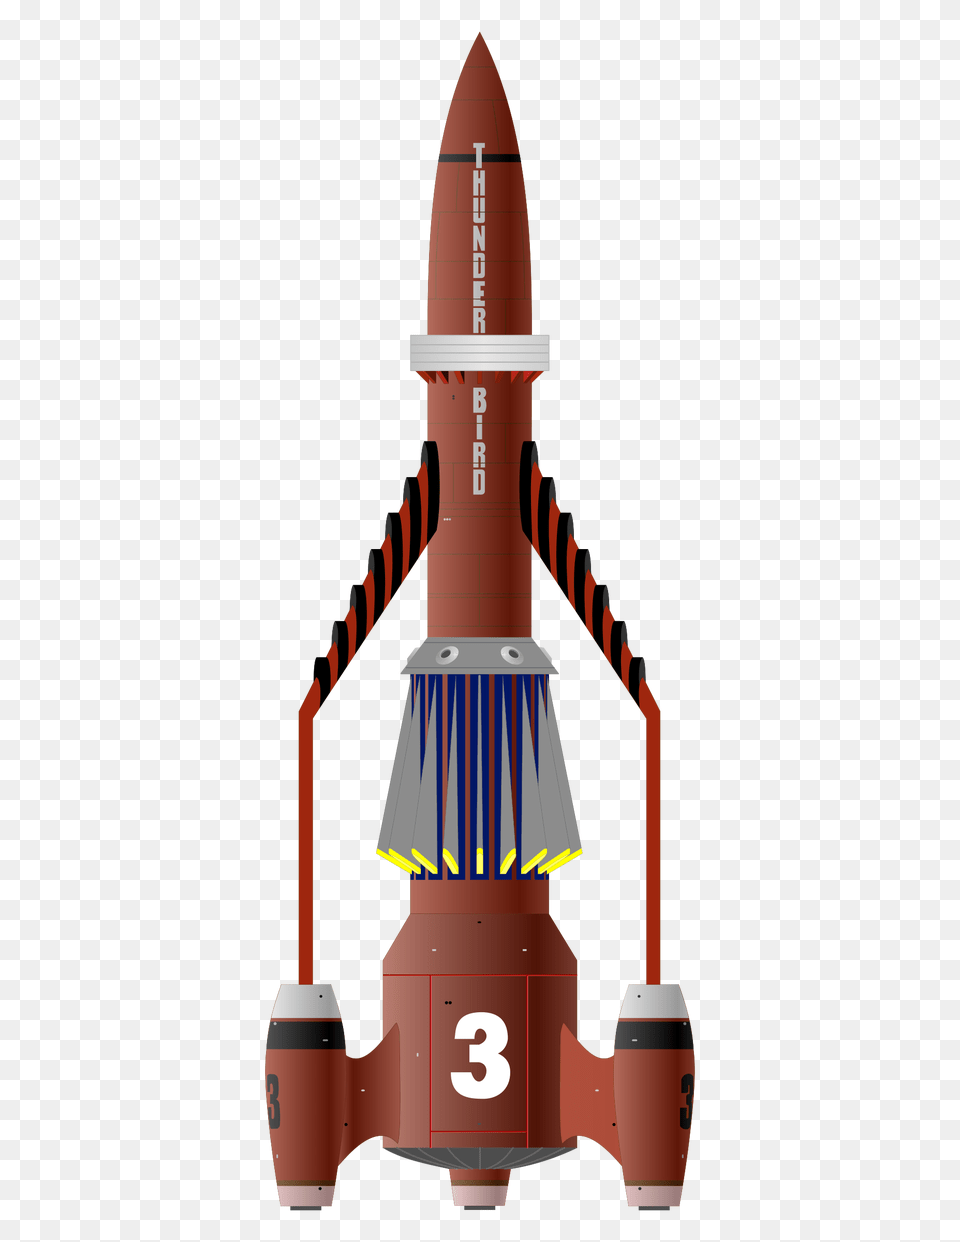 Thunderbird Icons, Rocket, Weapon, Ammunition, Missile Png Image